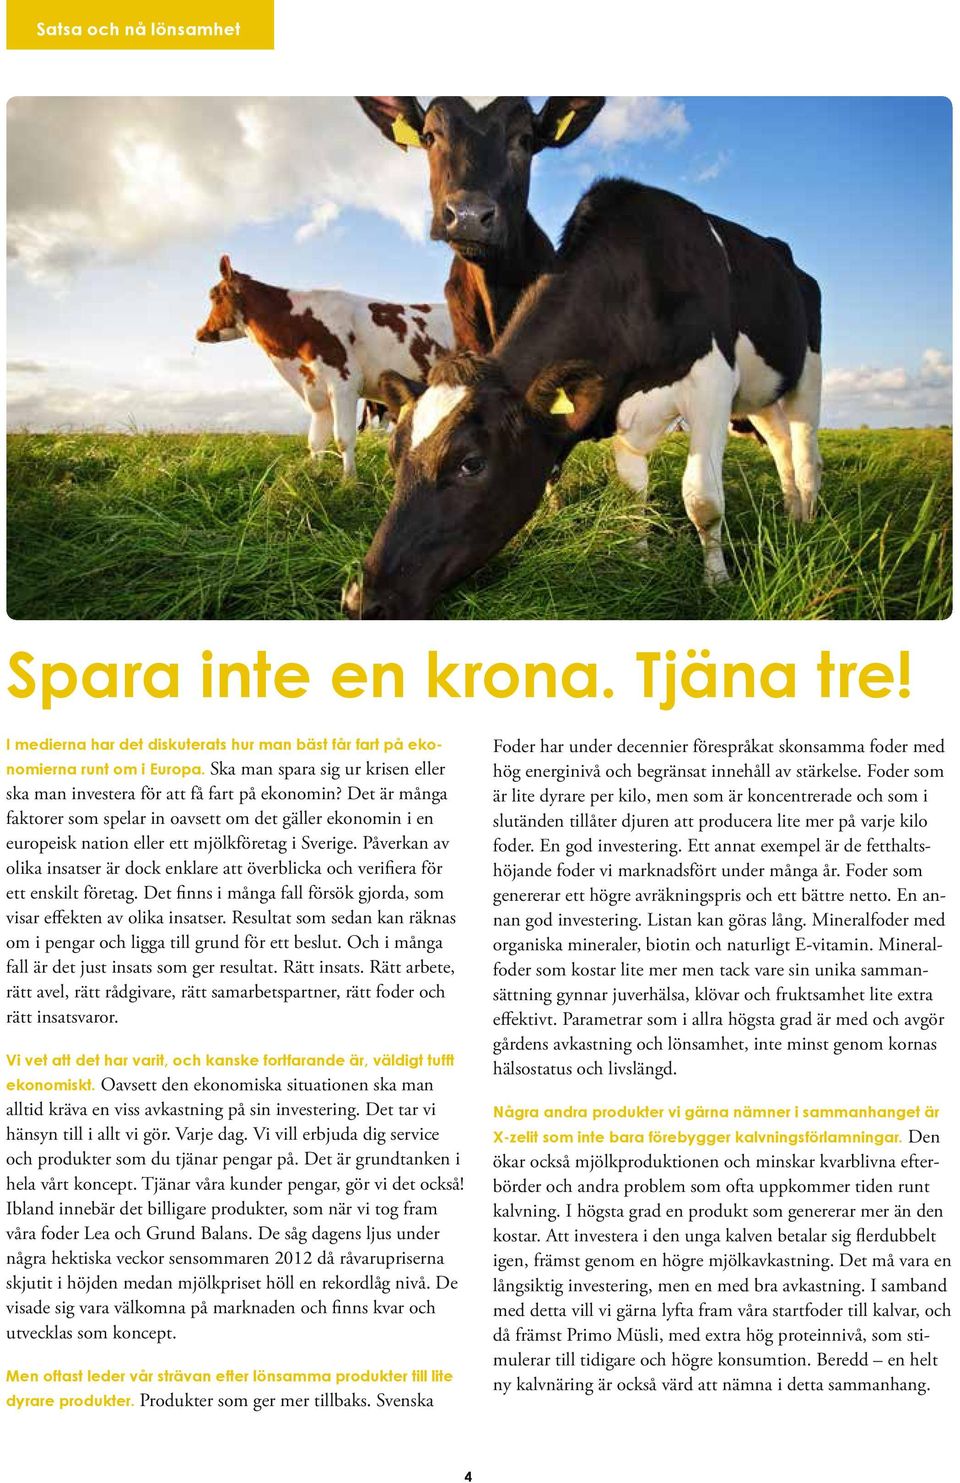 Det är många faktorer som spelar in oavsett om det gäller ekonomin i en europeisk nation eller ett mjölkföretag i Sverige.